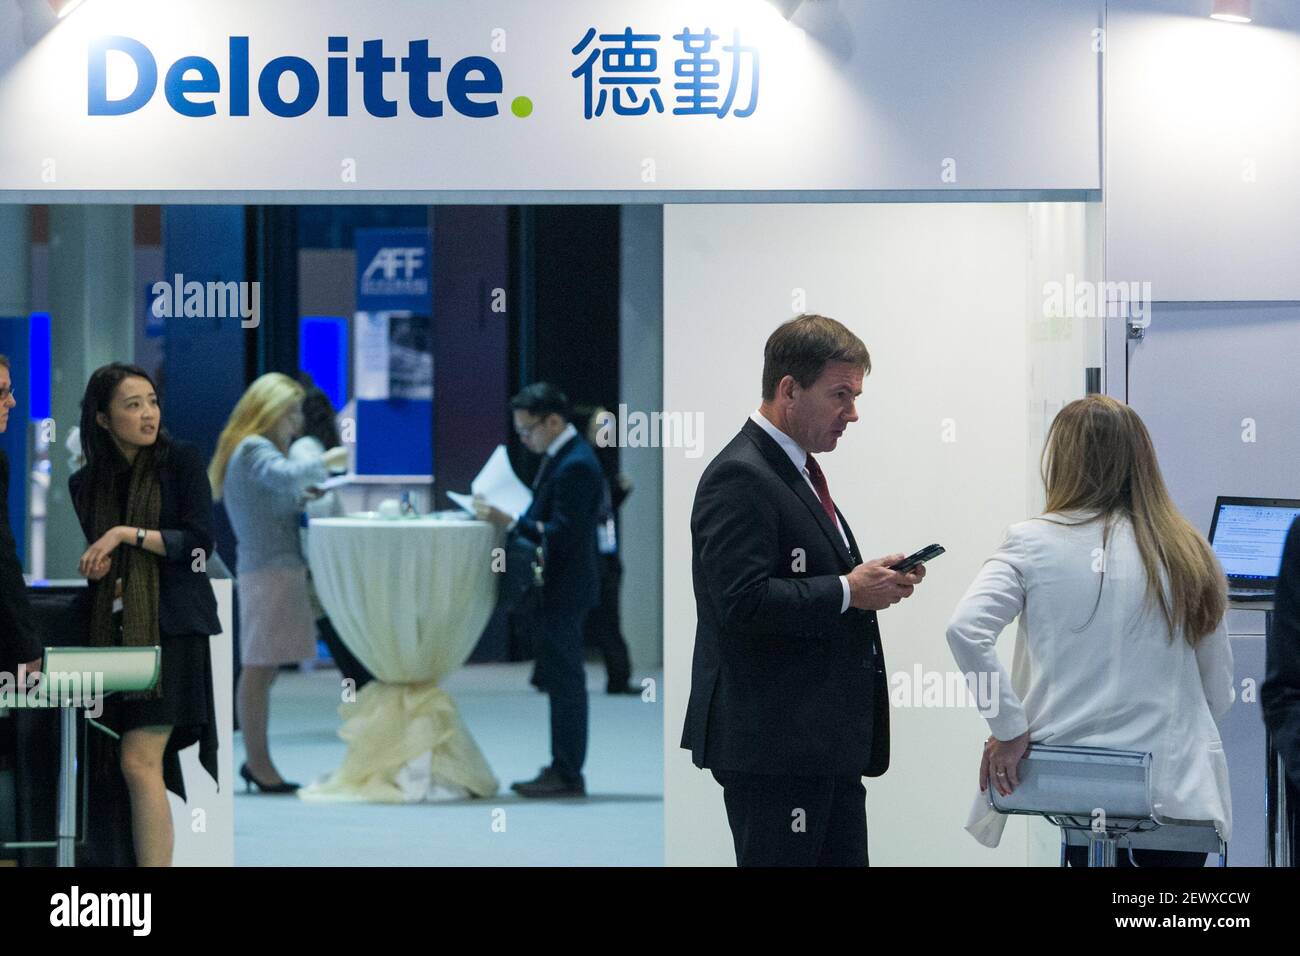 FILE--la gente visita el stand de Deloitte durante una exposición en Hong  Kong, China, 19 de enero de 2015. Entre 90 y 110 empresas lograrán cotizar  en el nuevo Consejo de innovación